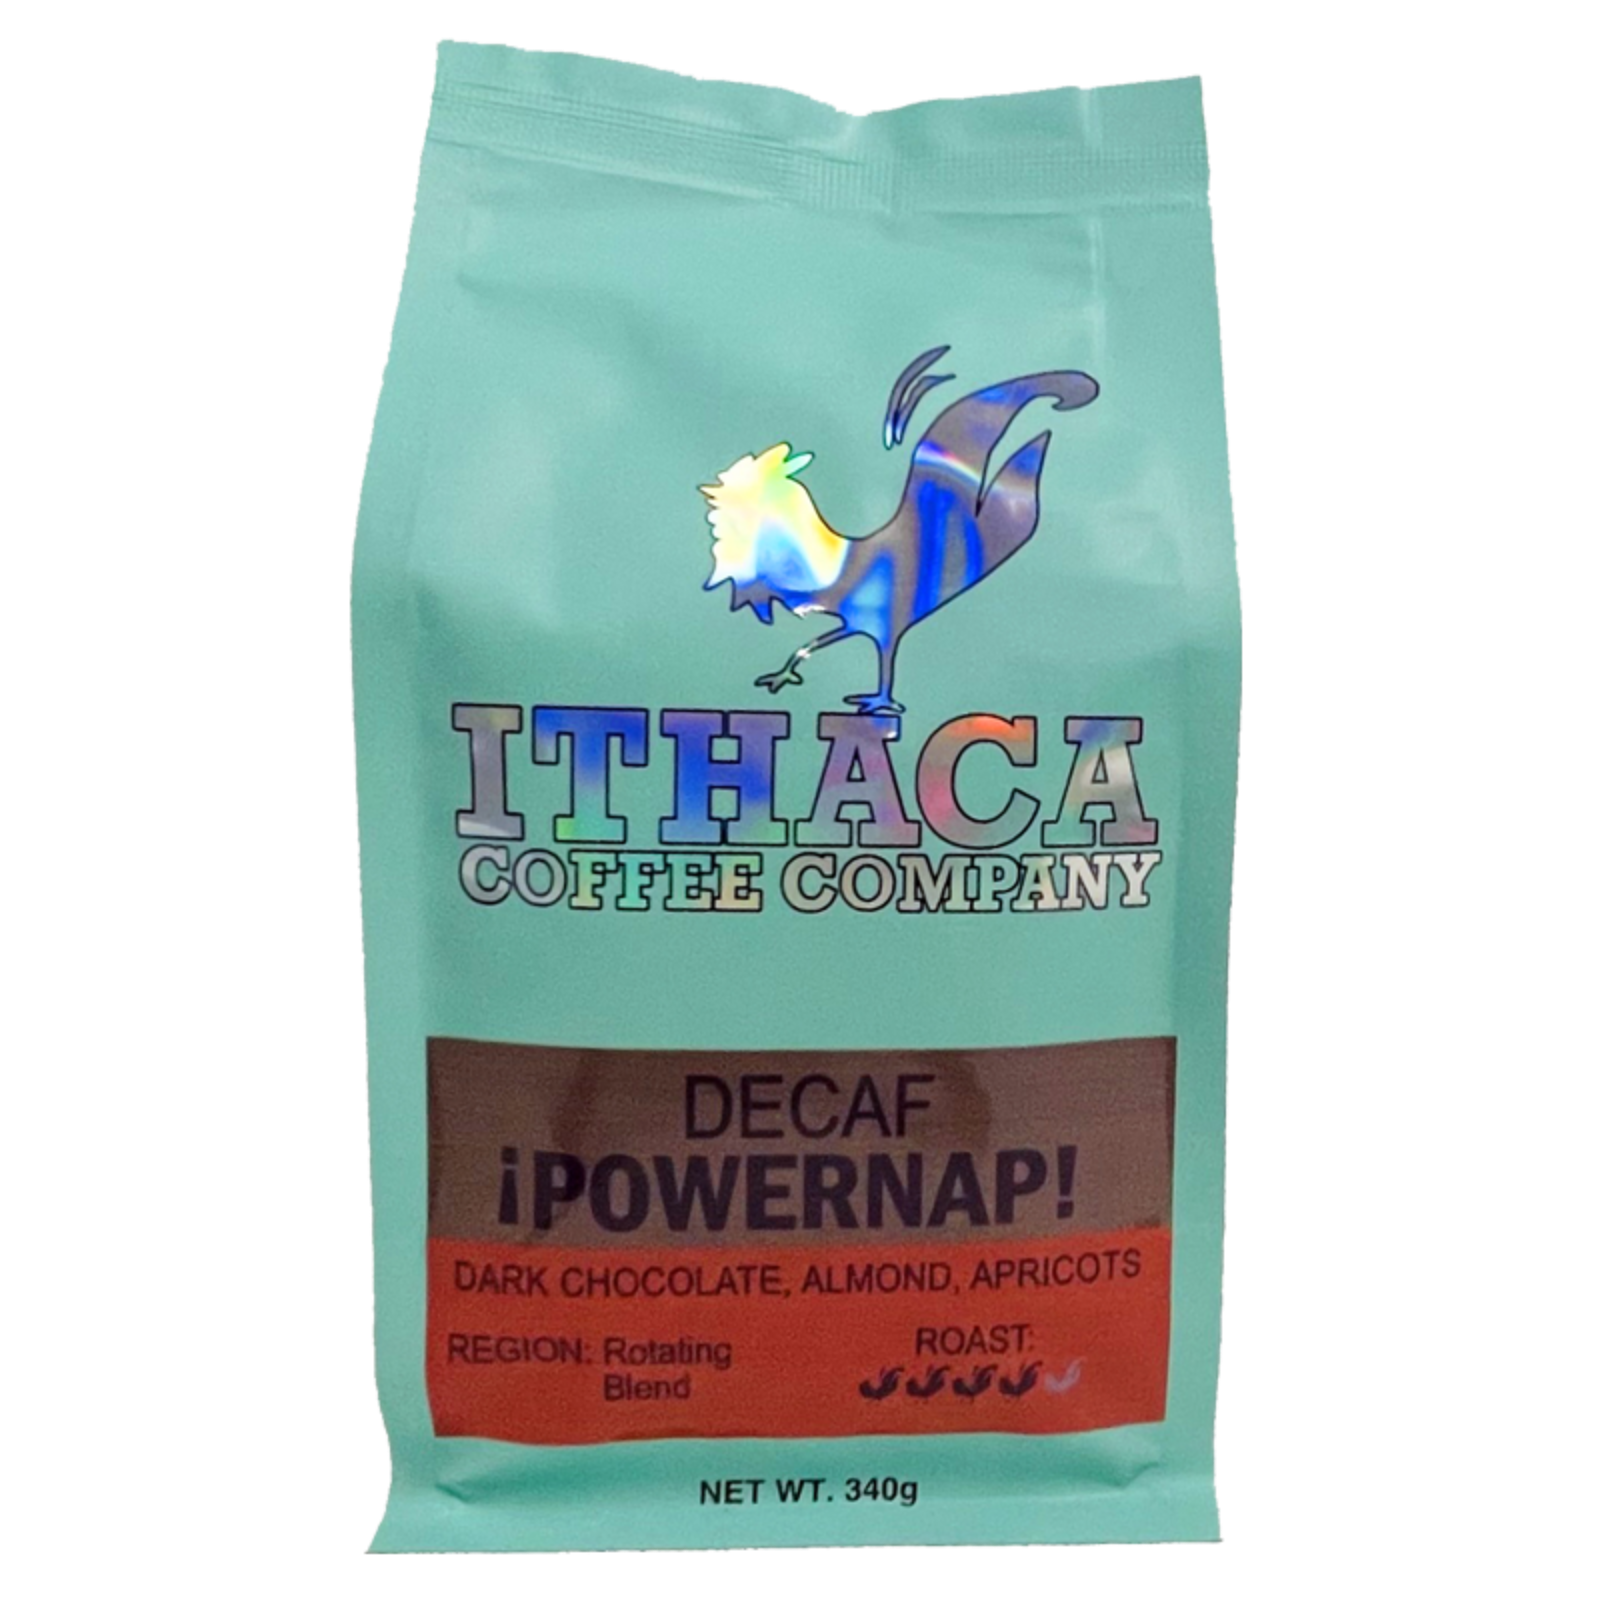 Power Nap! Decaf Blend - 12oz Bag